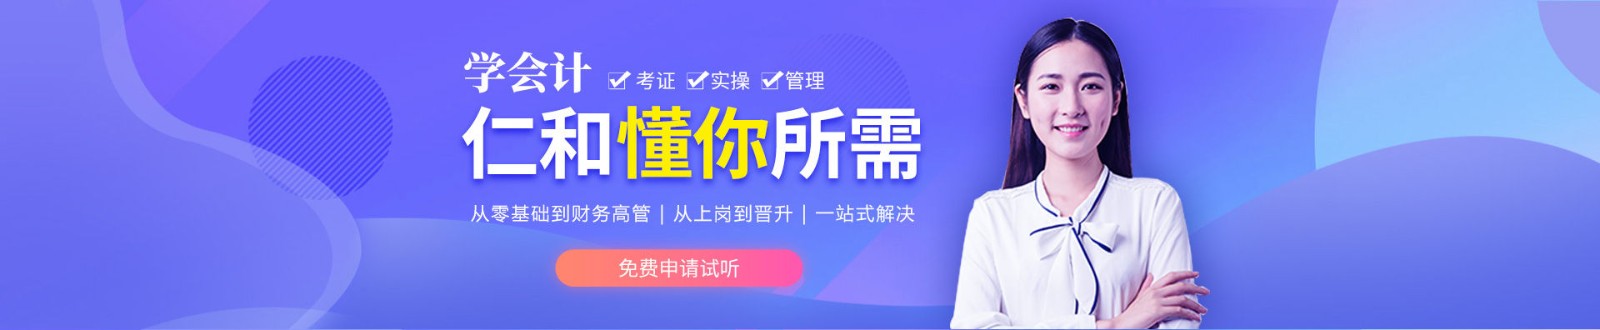 沧州仁和会计培训学校 横幅广告